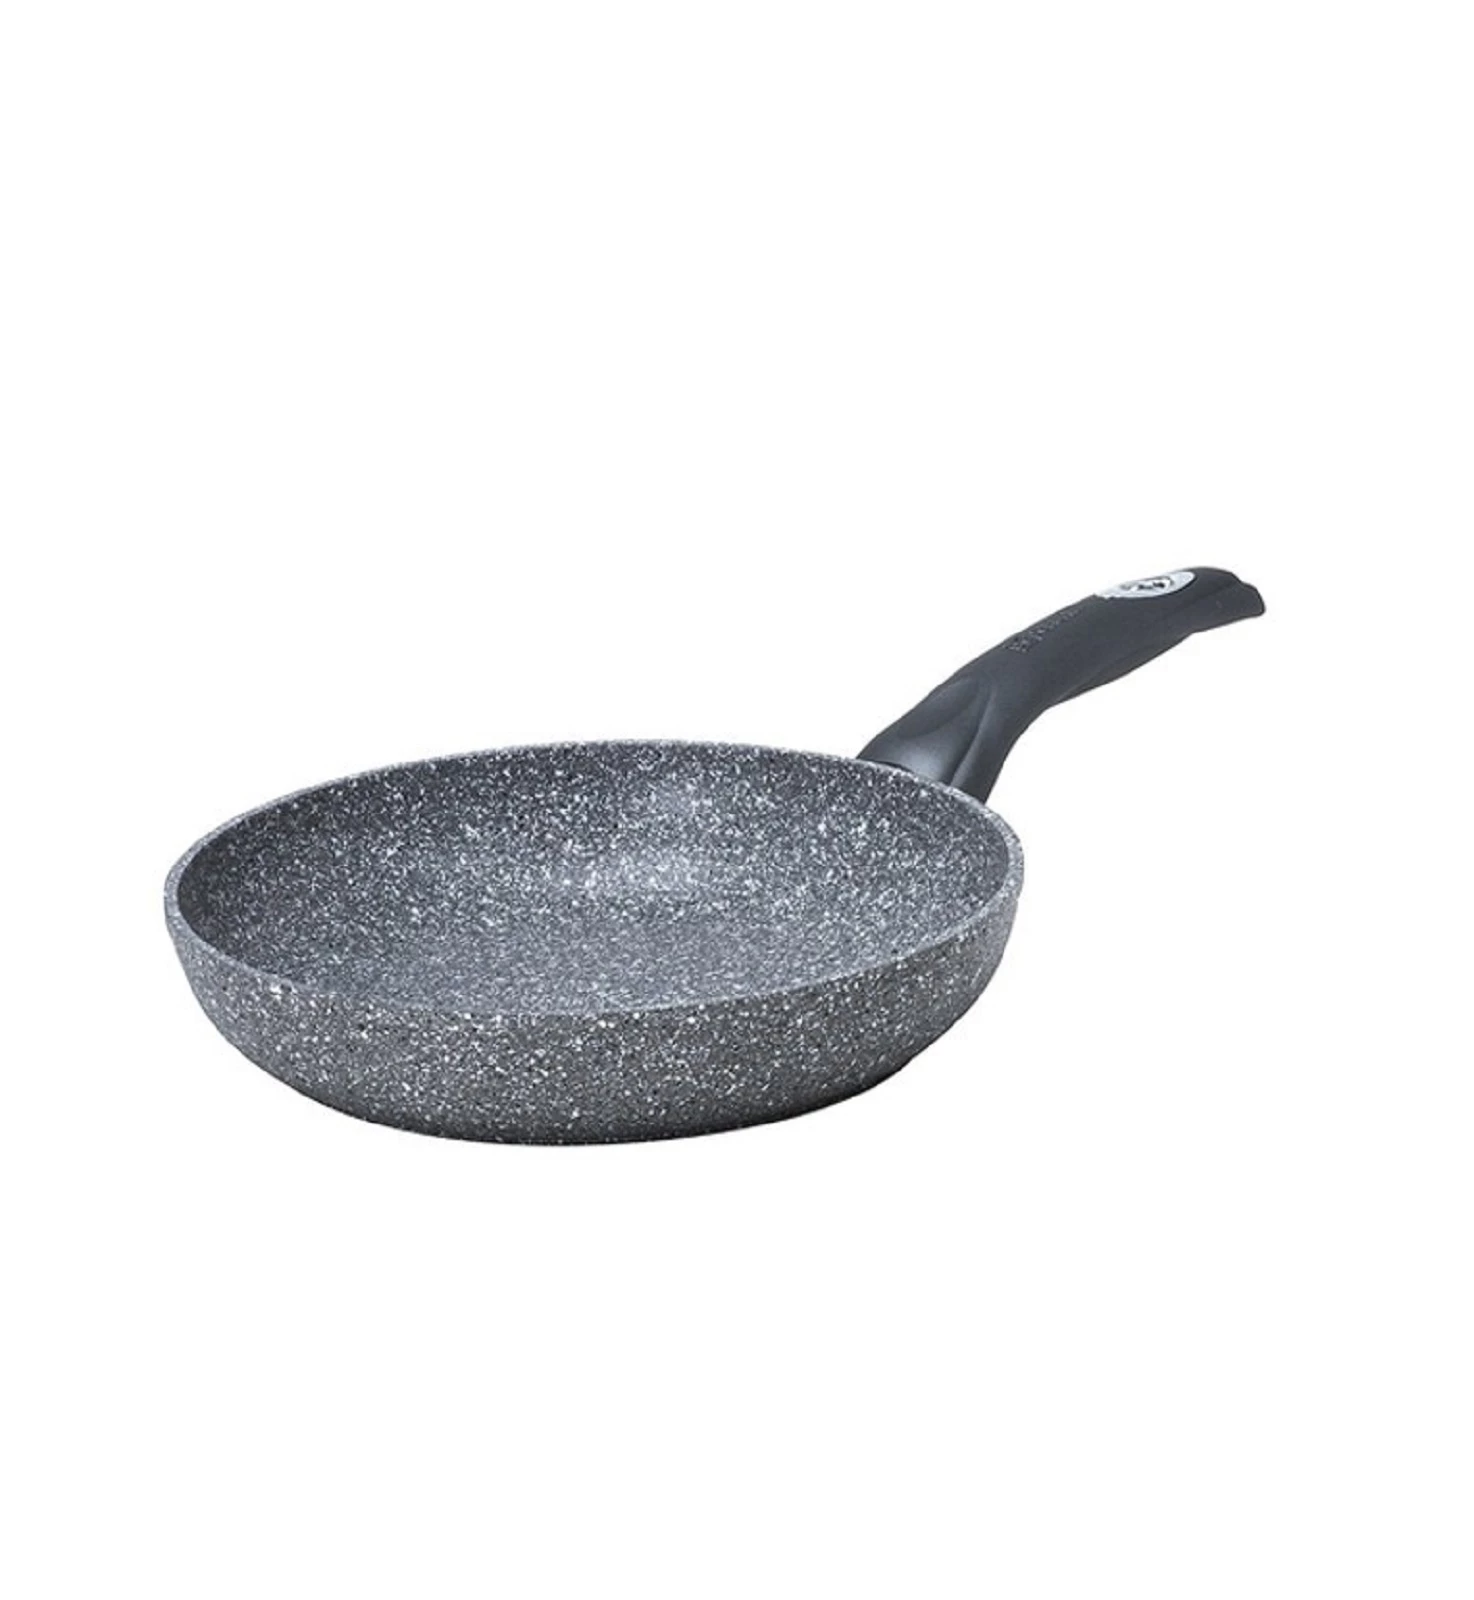 Сковорода для індукційних плит Bialetti MADAME PETRA INDUCTION, діаметр 24 см, сірий Bialetti Y0C6PA0240 фото 3